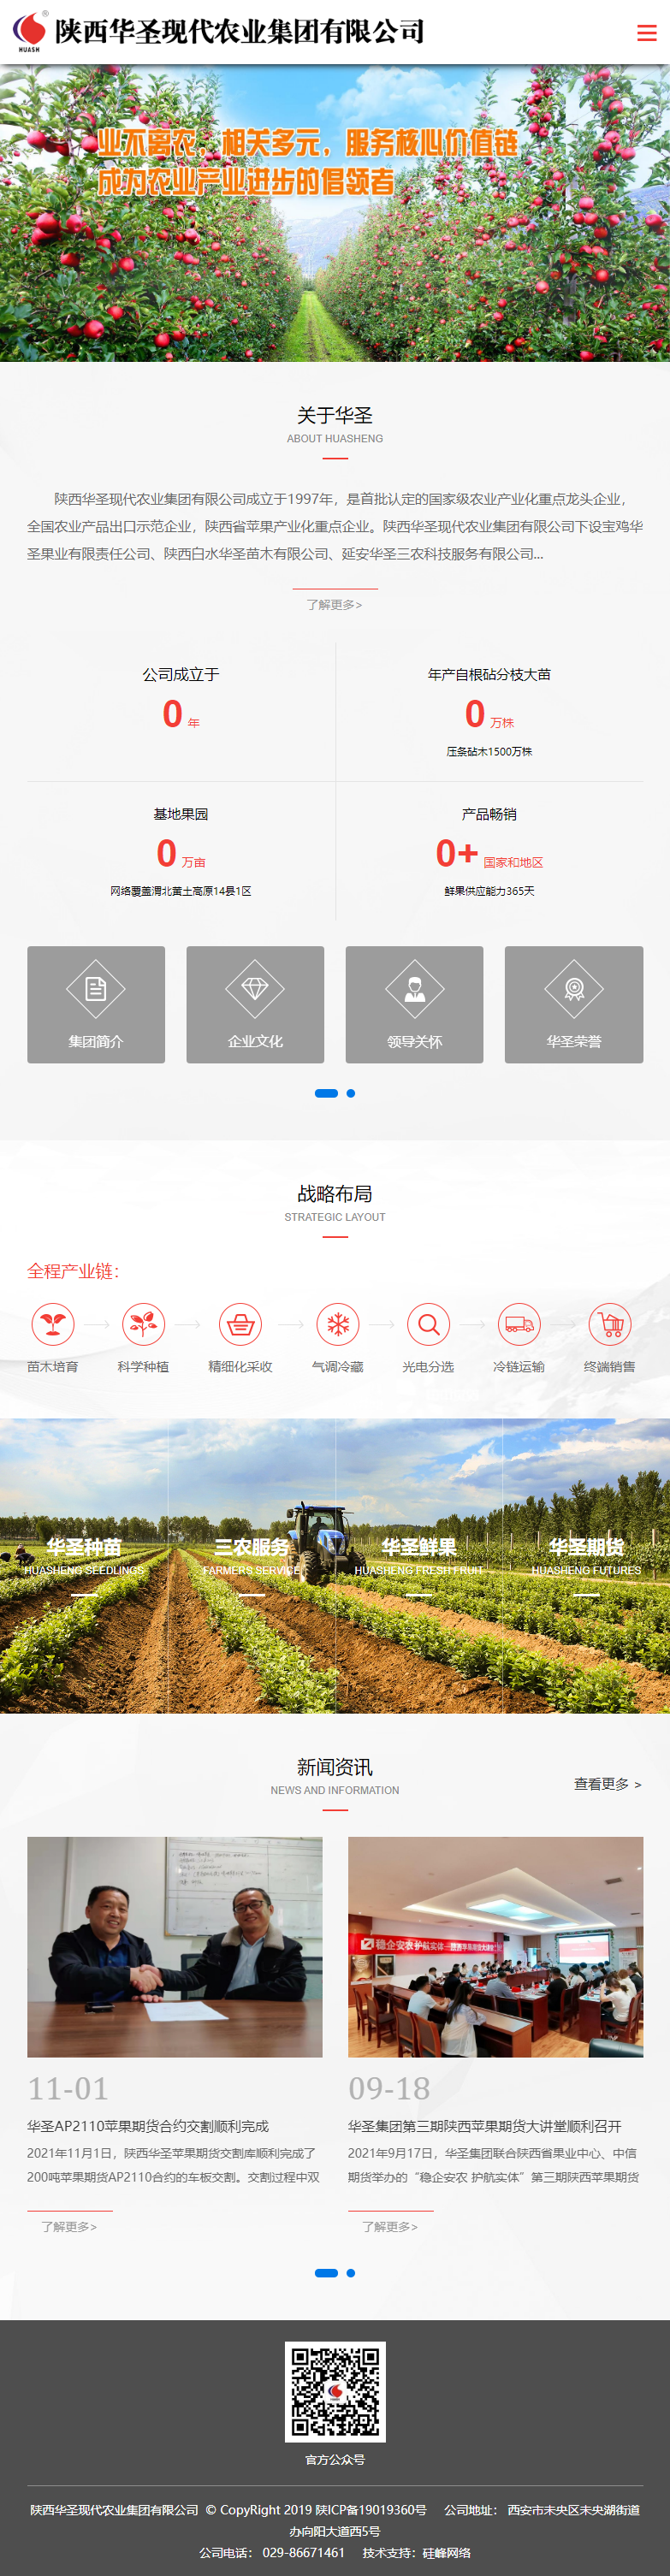 陕西华圣现代农业集团有限公司网站案例